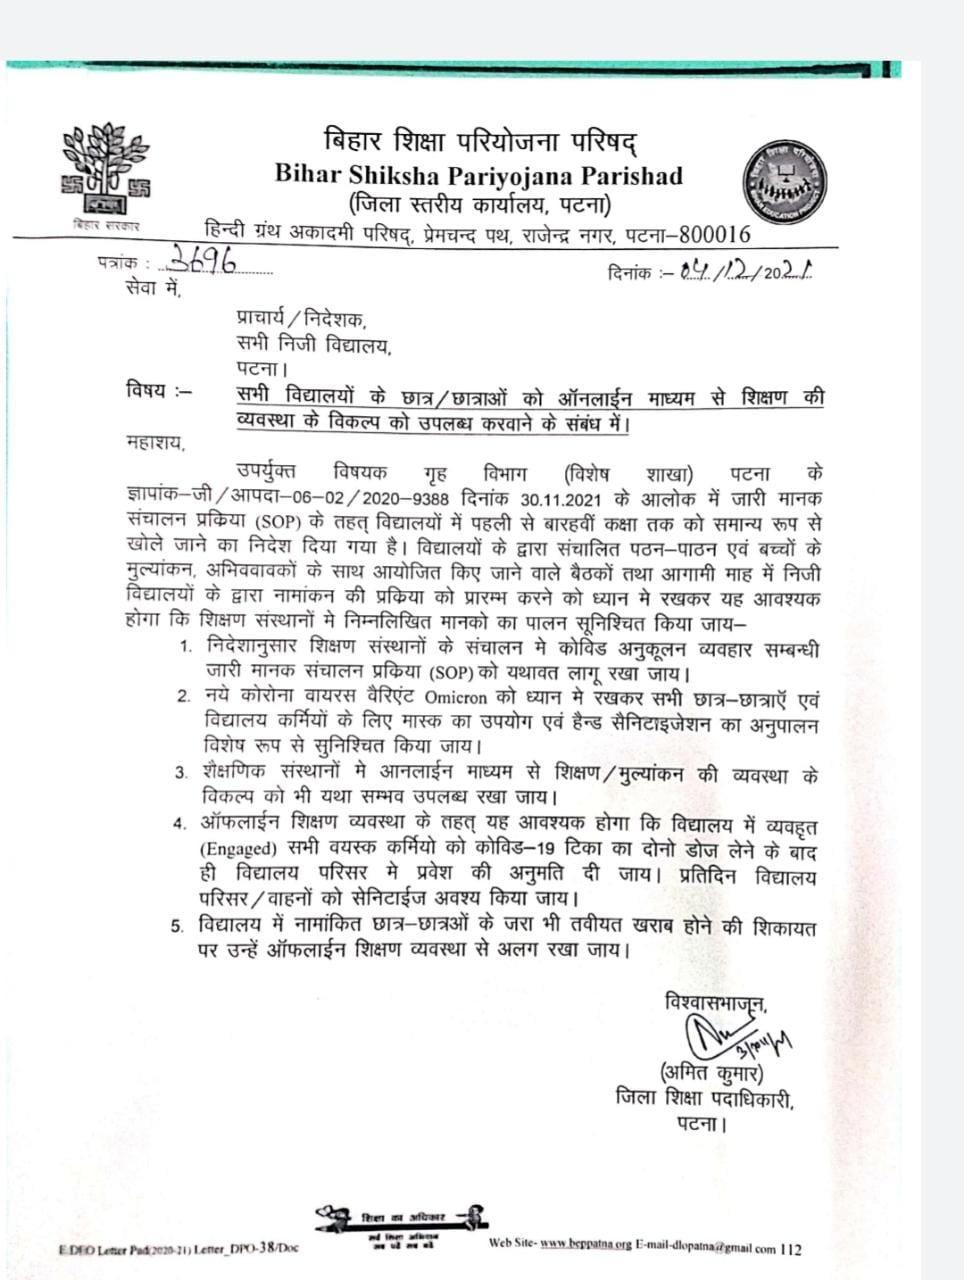 बिहार शिक्षा परियोजना परिषद द्वारा जारी पत्र